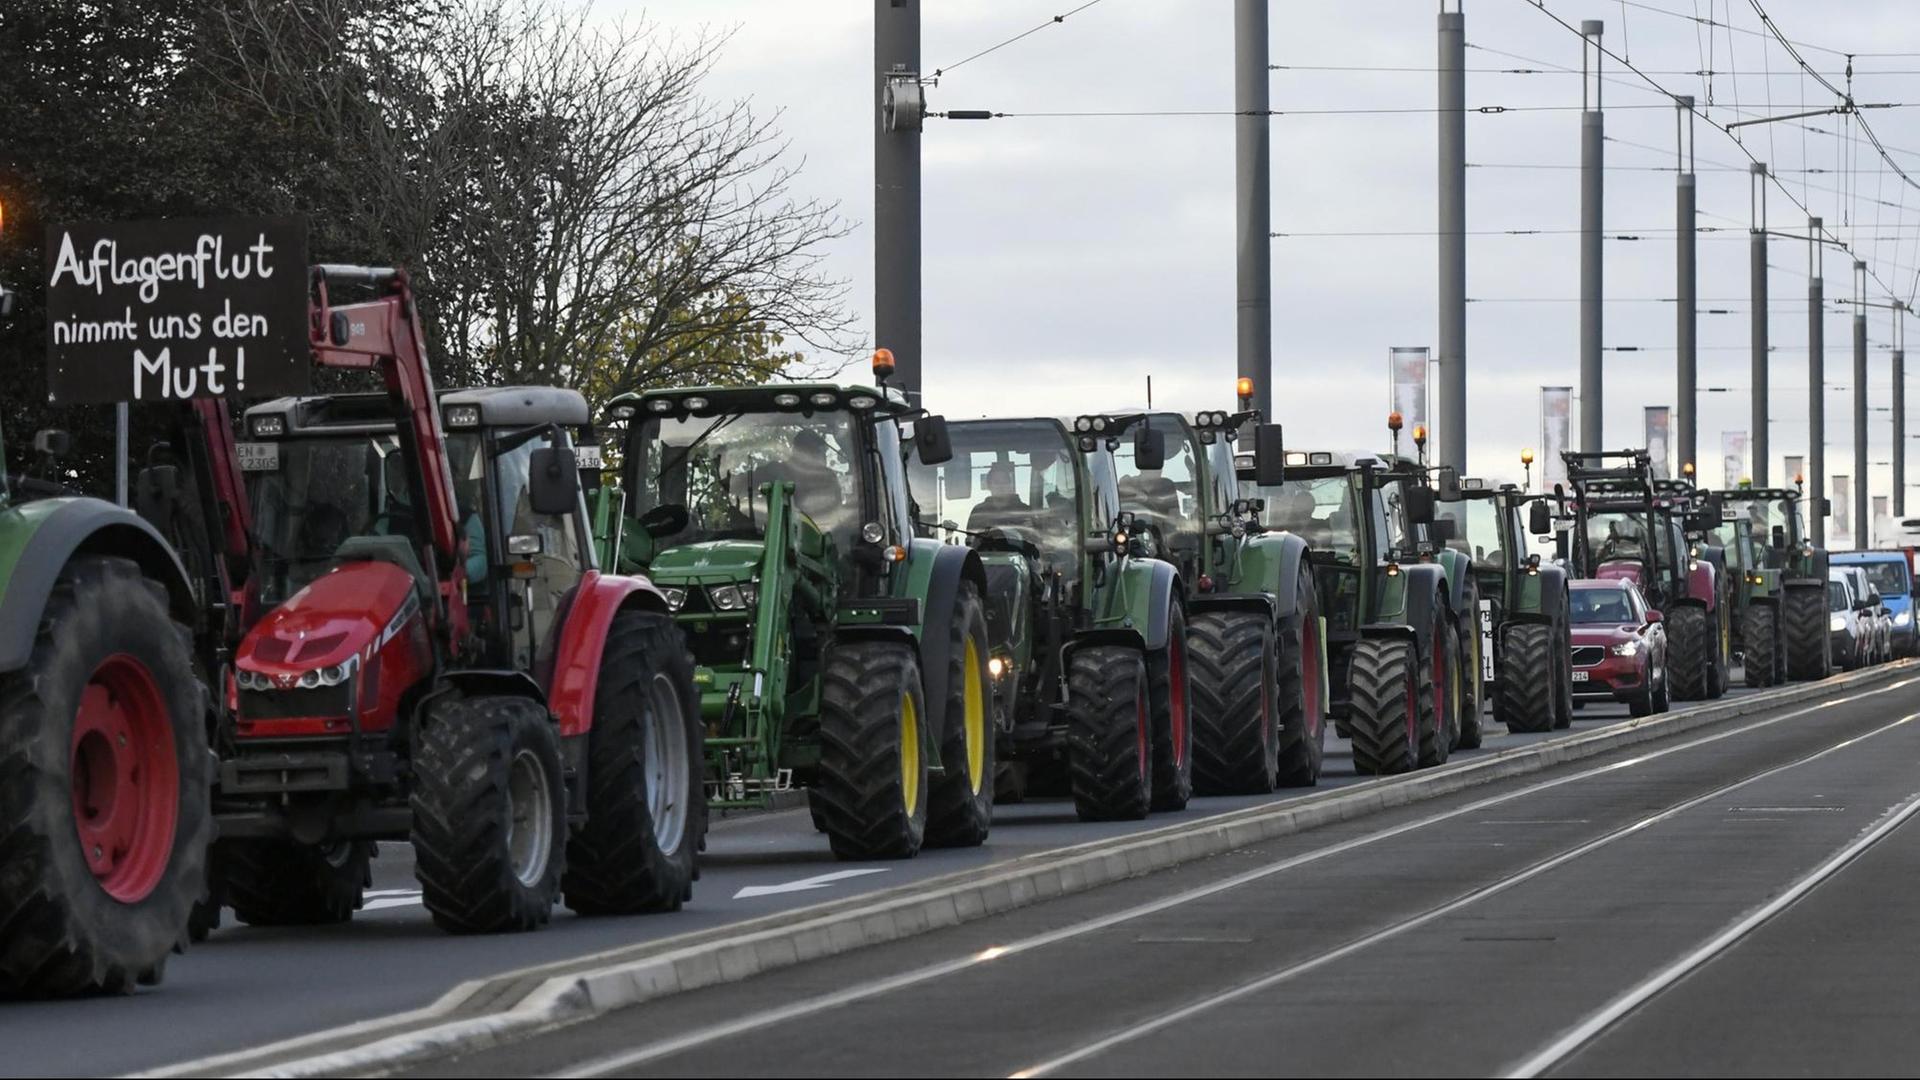 Viele Traktoren fahren in einer Reihe auf der Straße. An einem Traktor hängt ein Plakat.